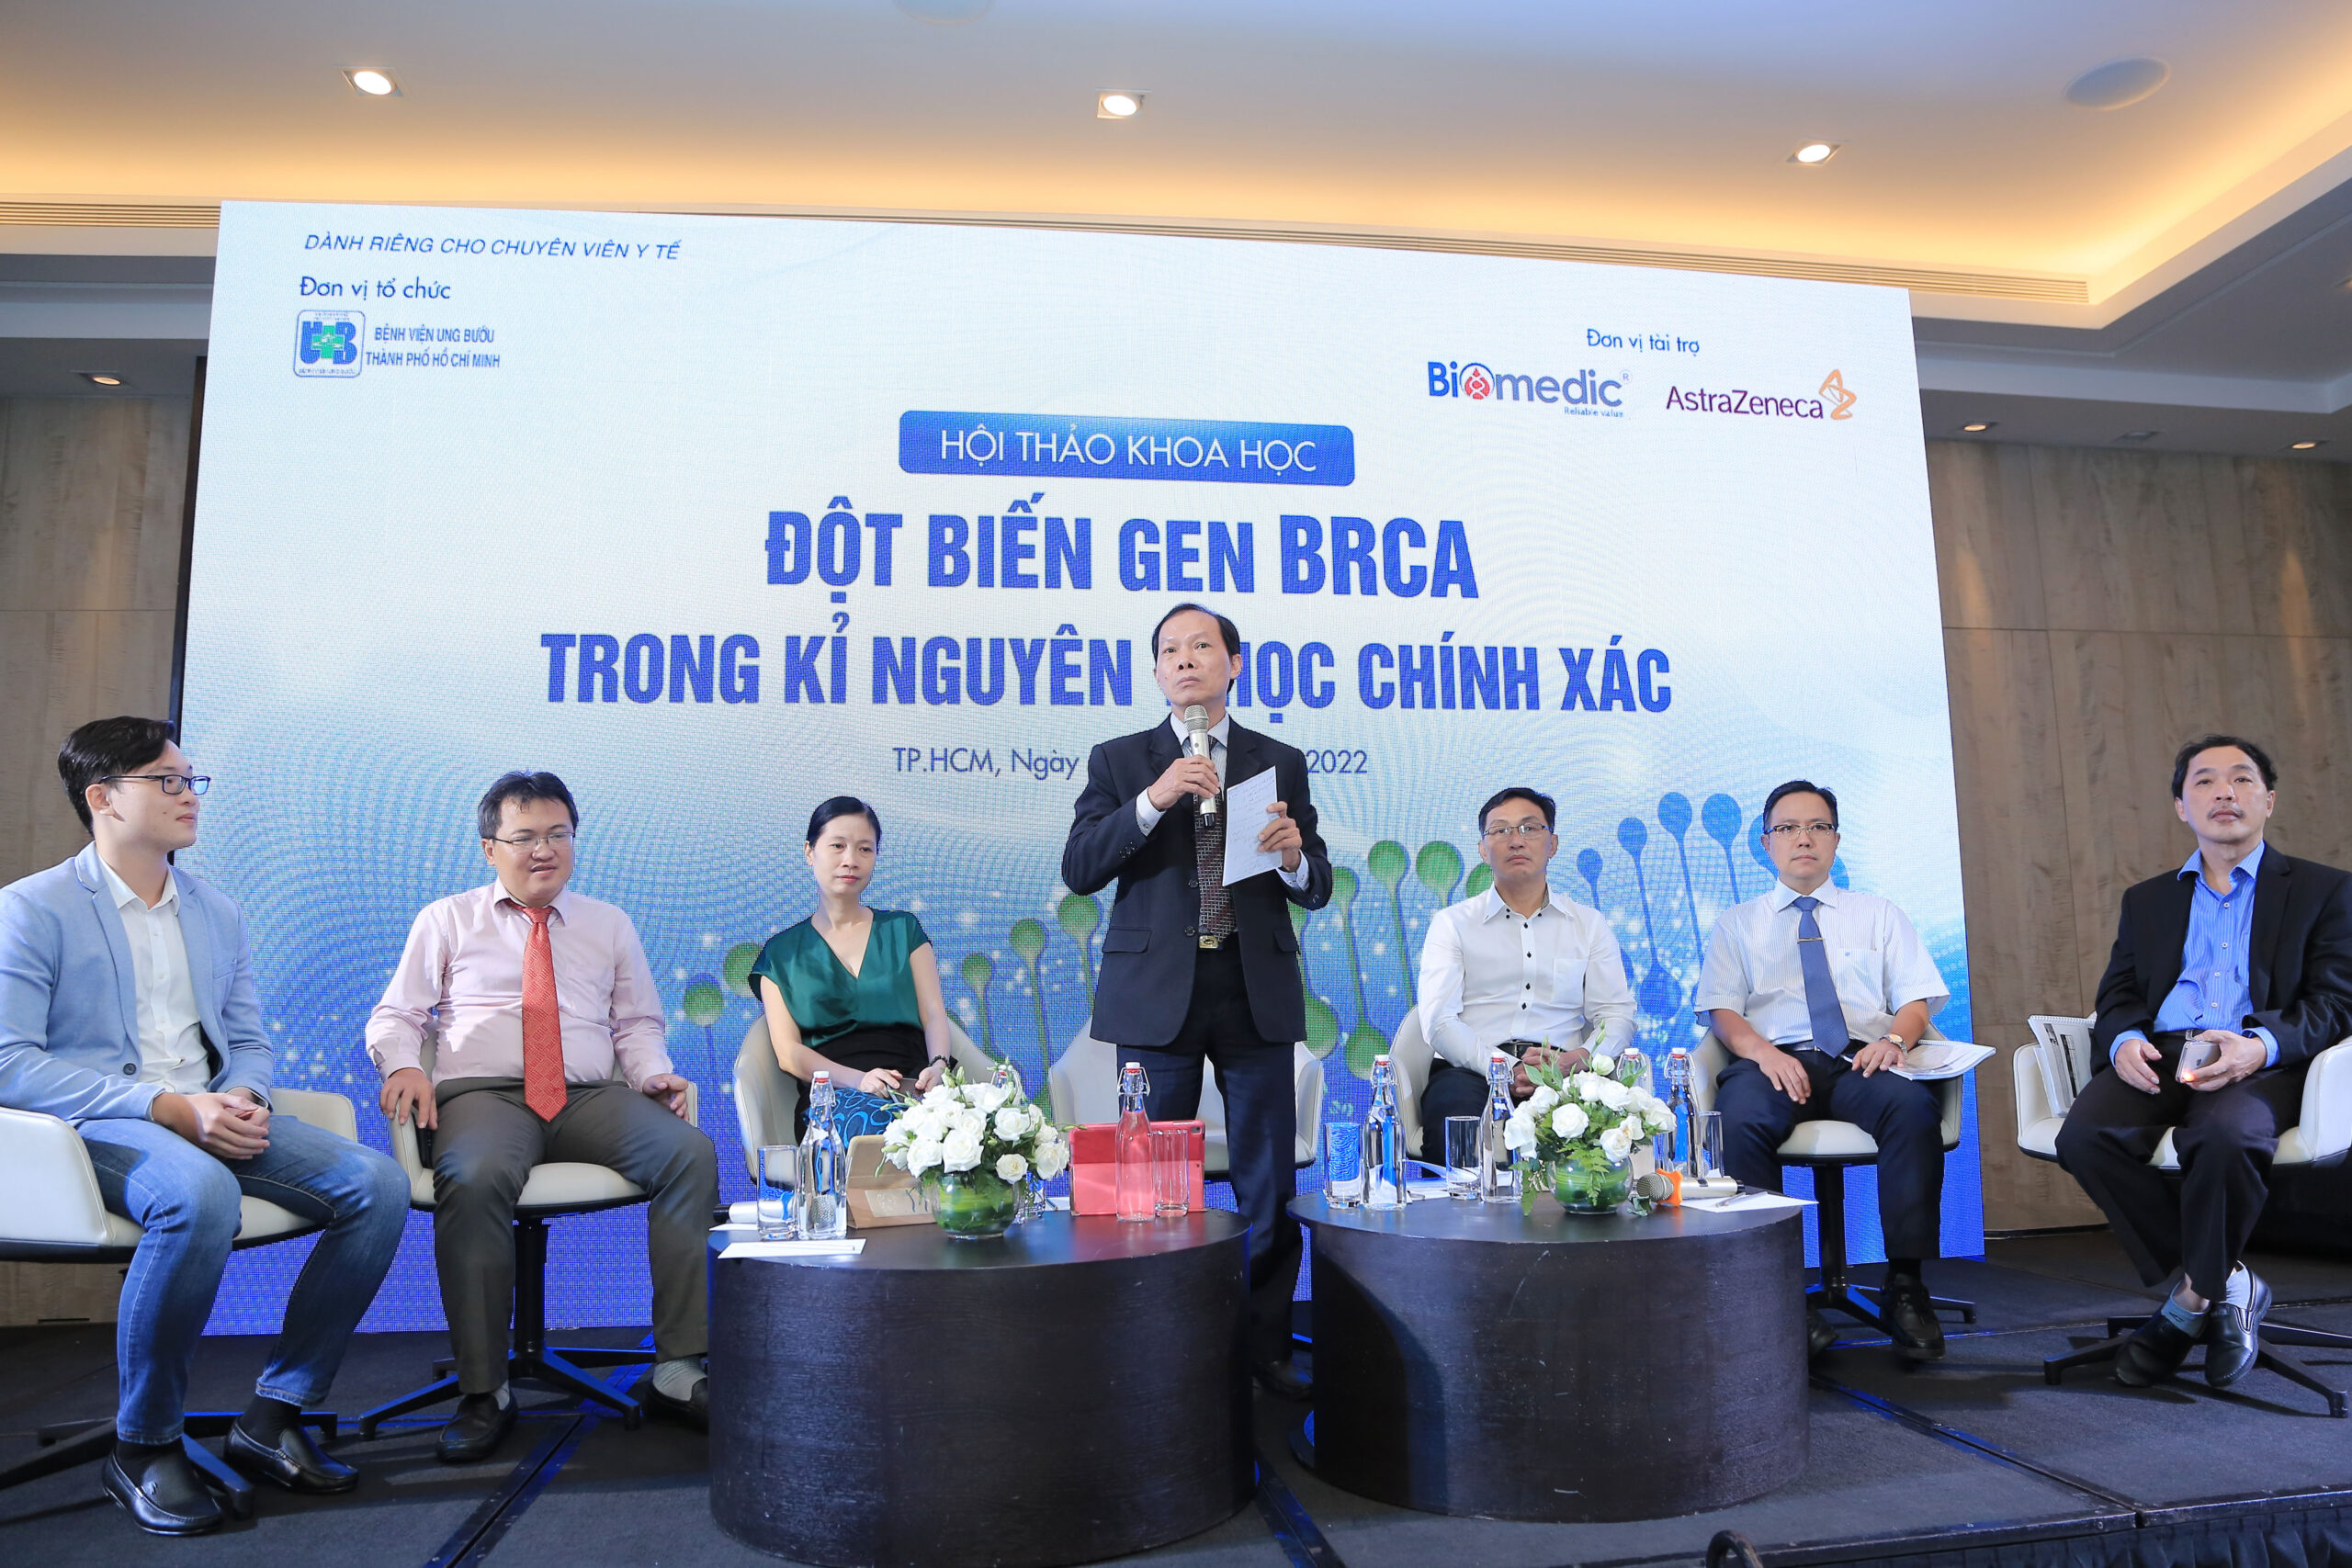 Xét nghiệm đột biến gen BRCA tiêu chuẩn IVD được phê duyệt tại Bệnh viện Ung bướu TP Hồ Chí Minh